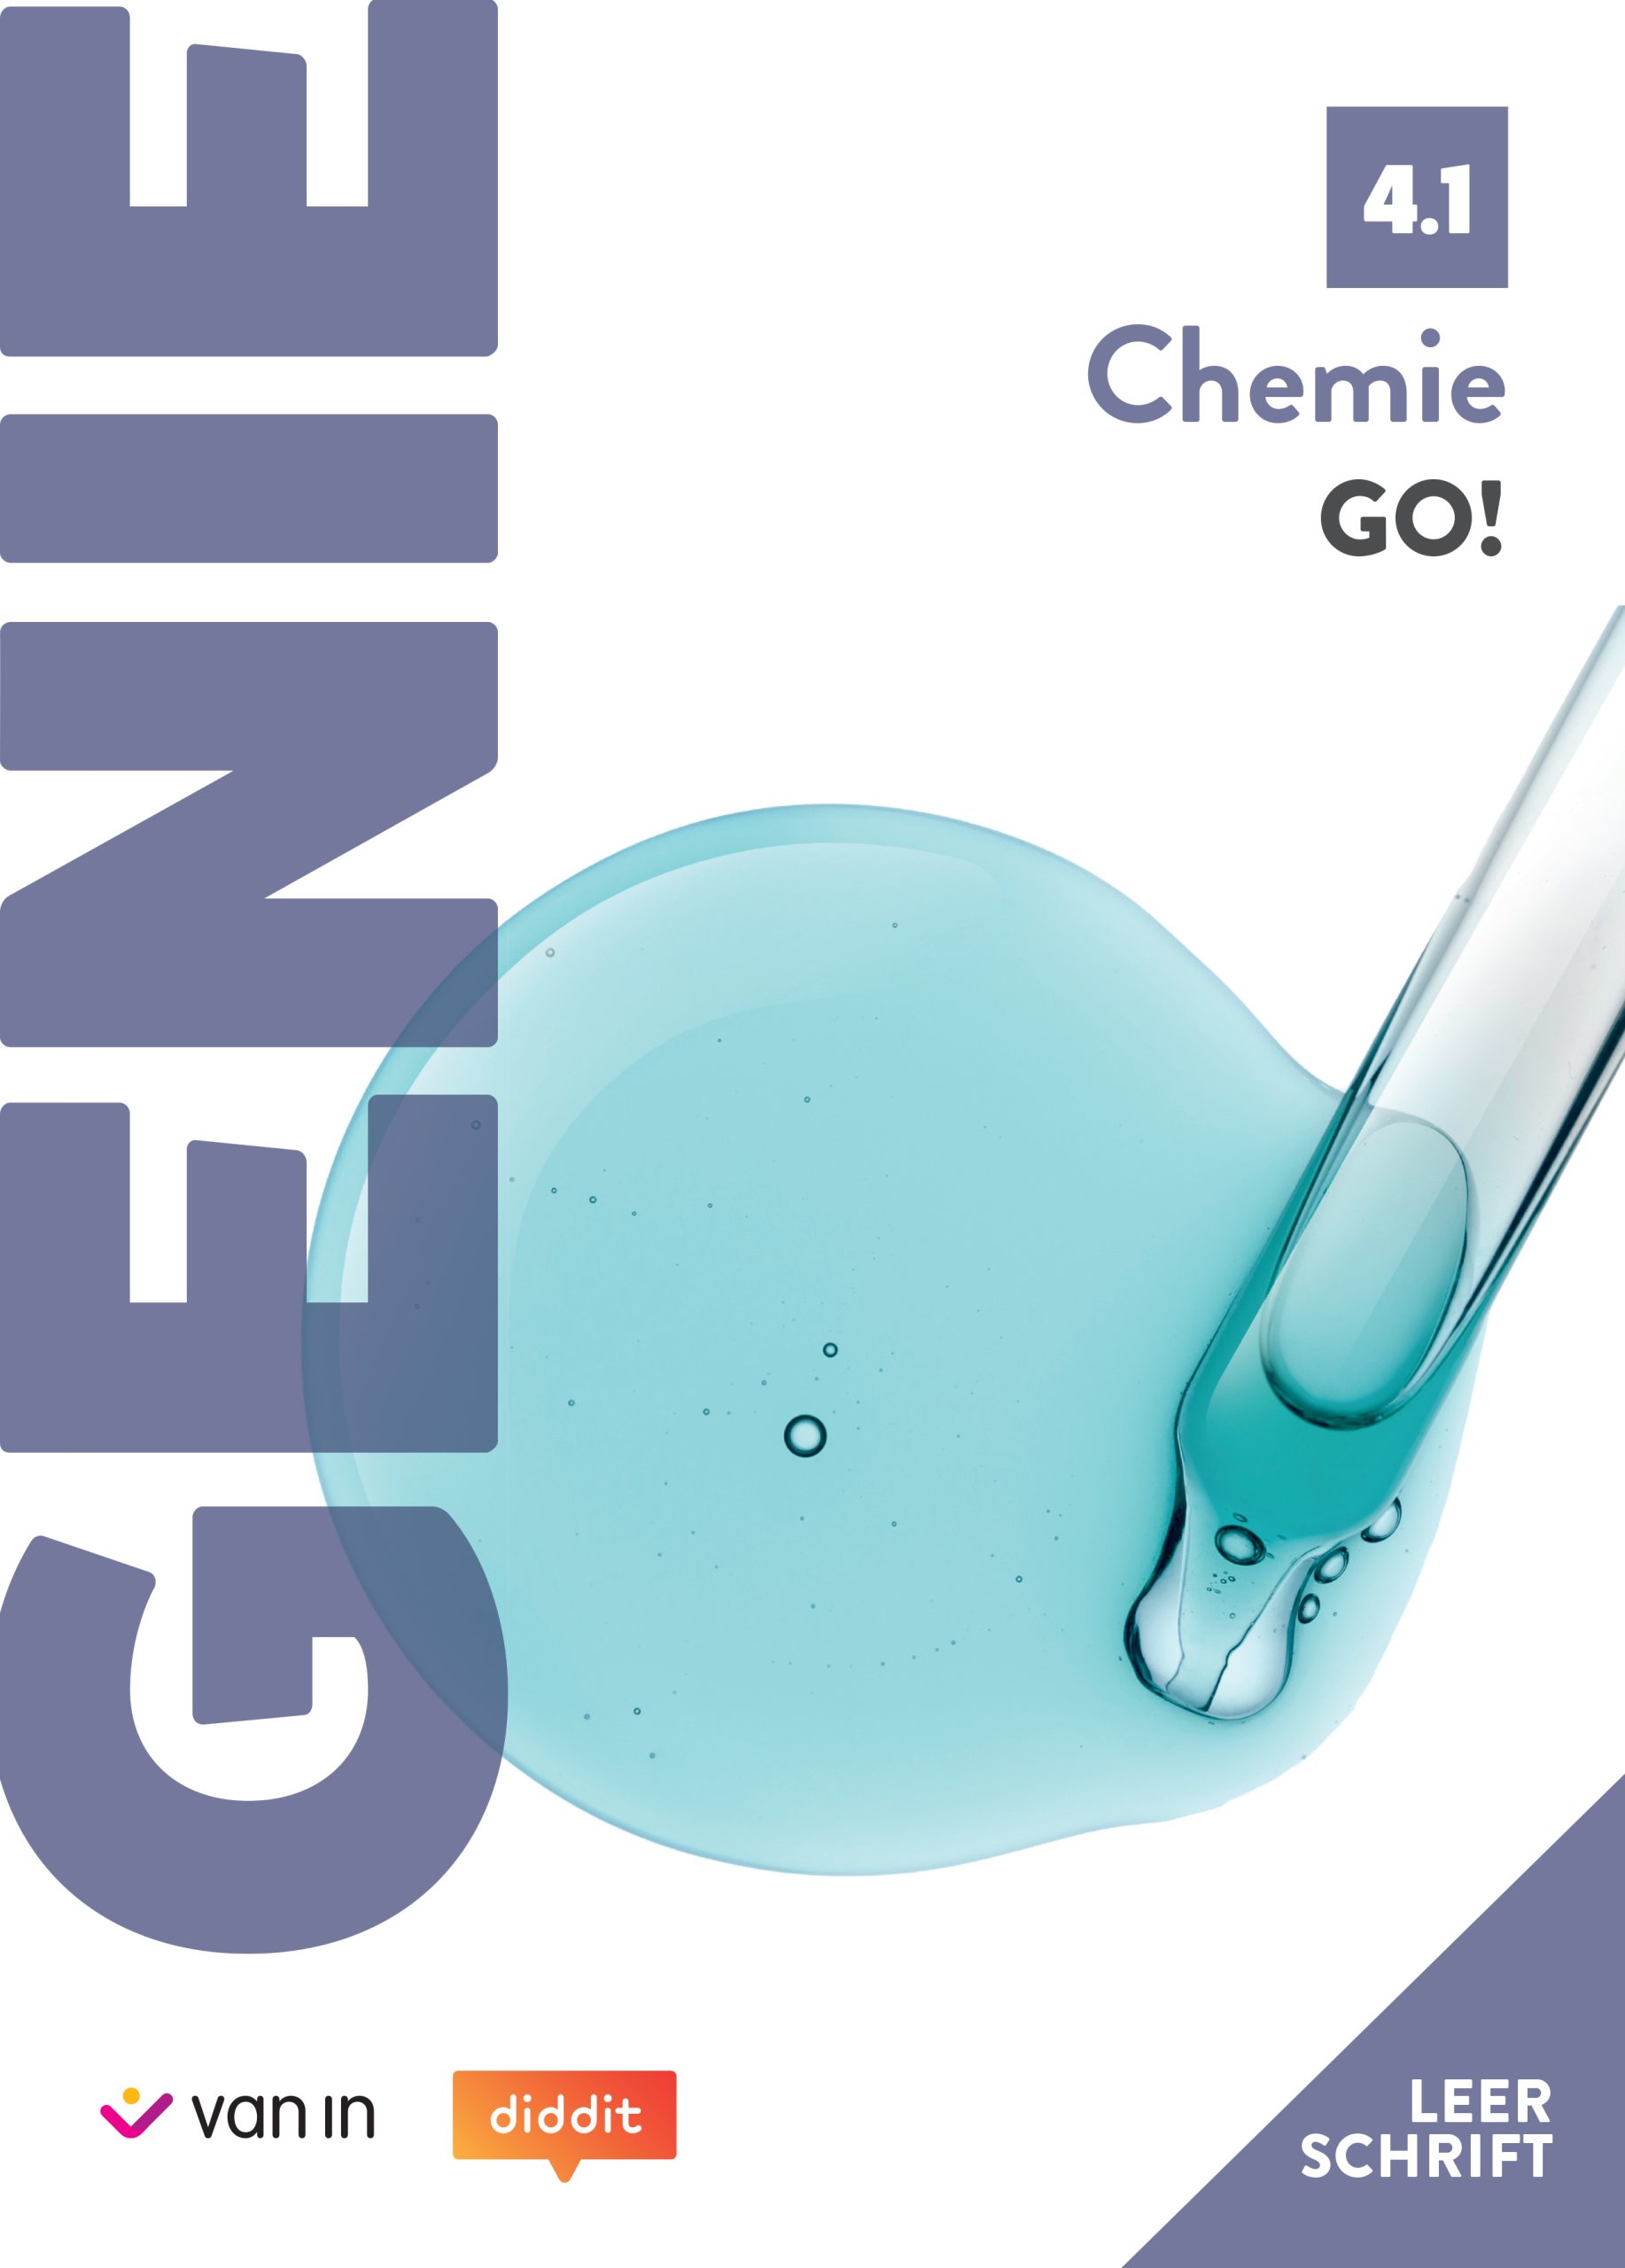 Leerschrift GENIE Chemie GO! 4.1